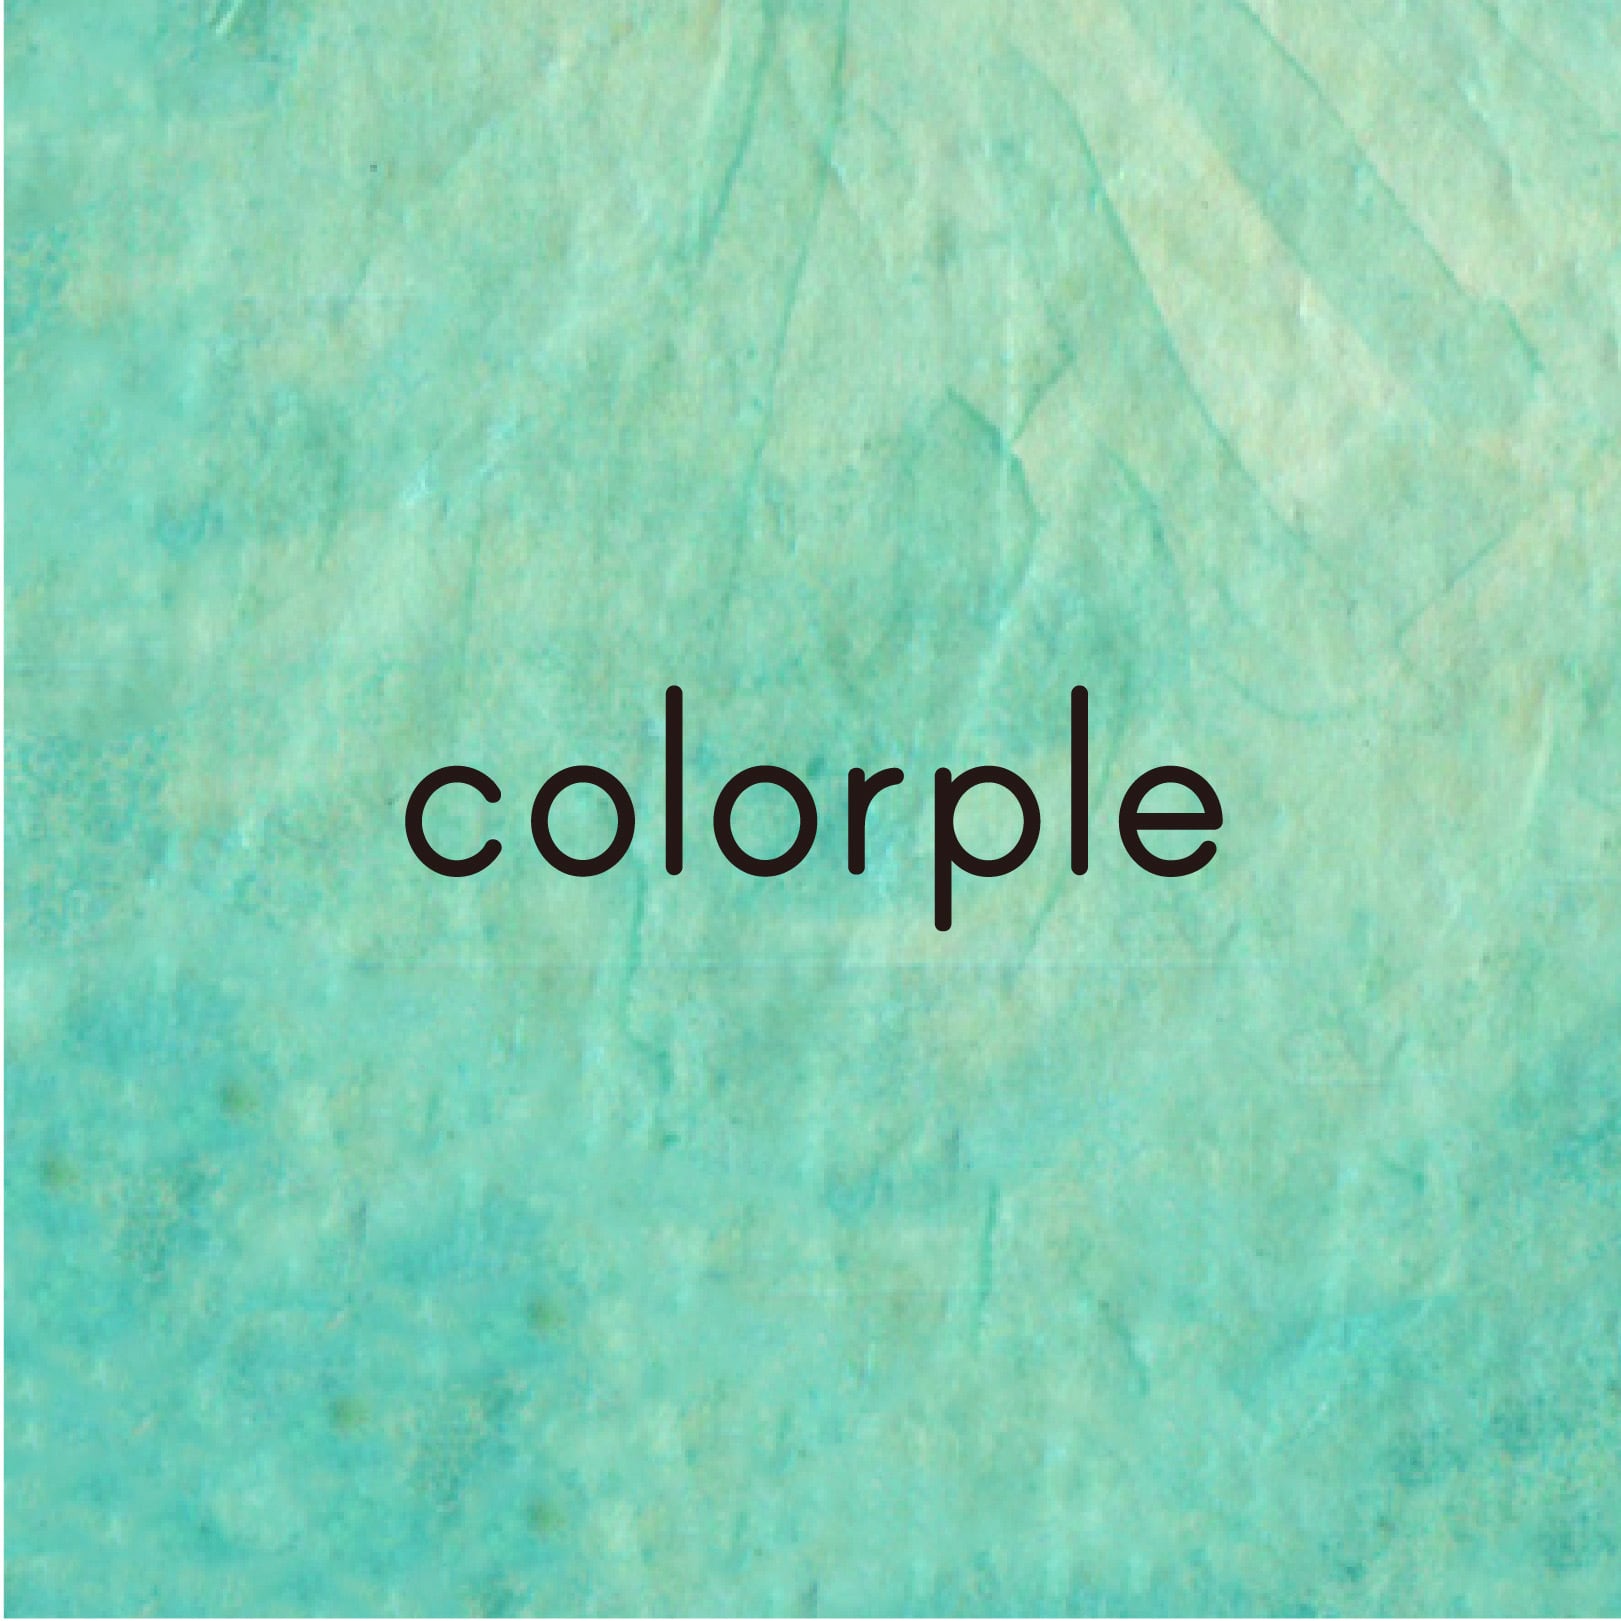 colorple